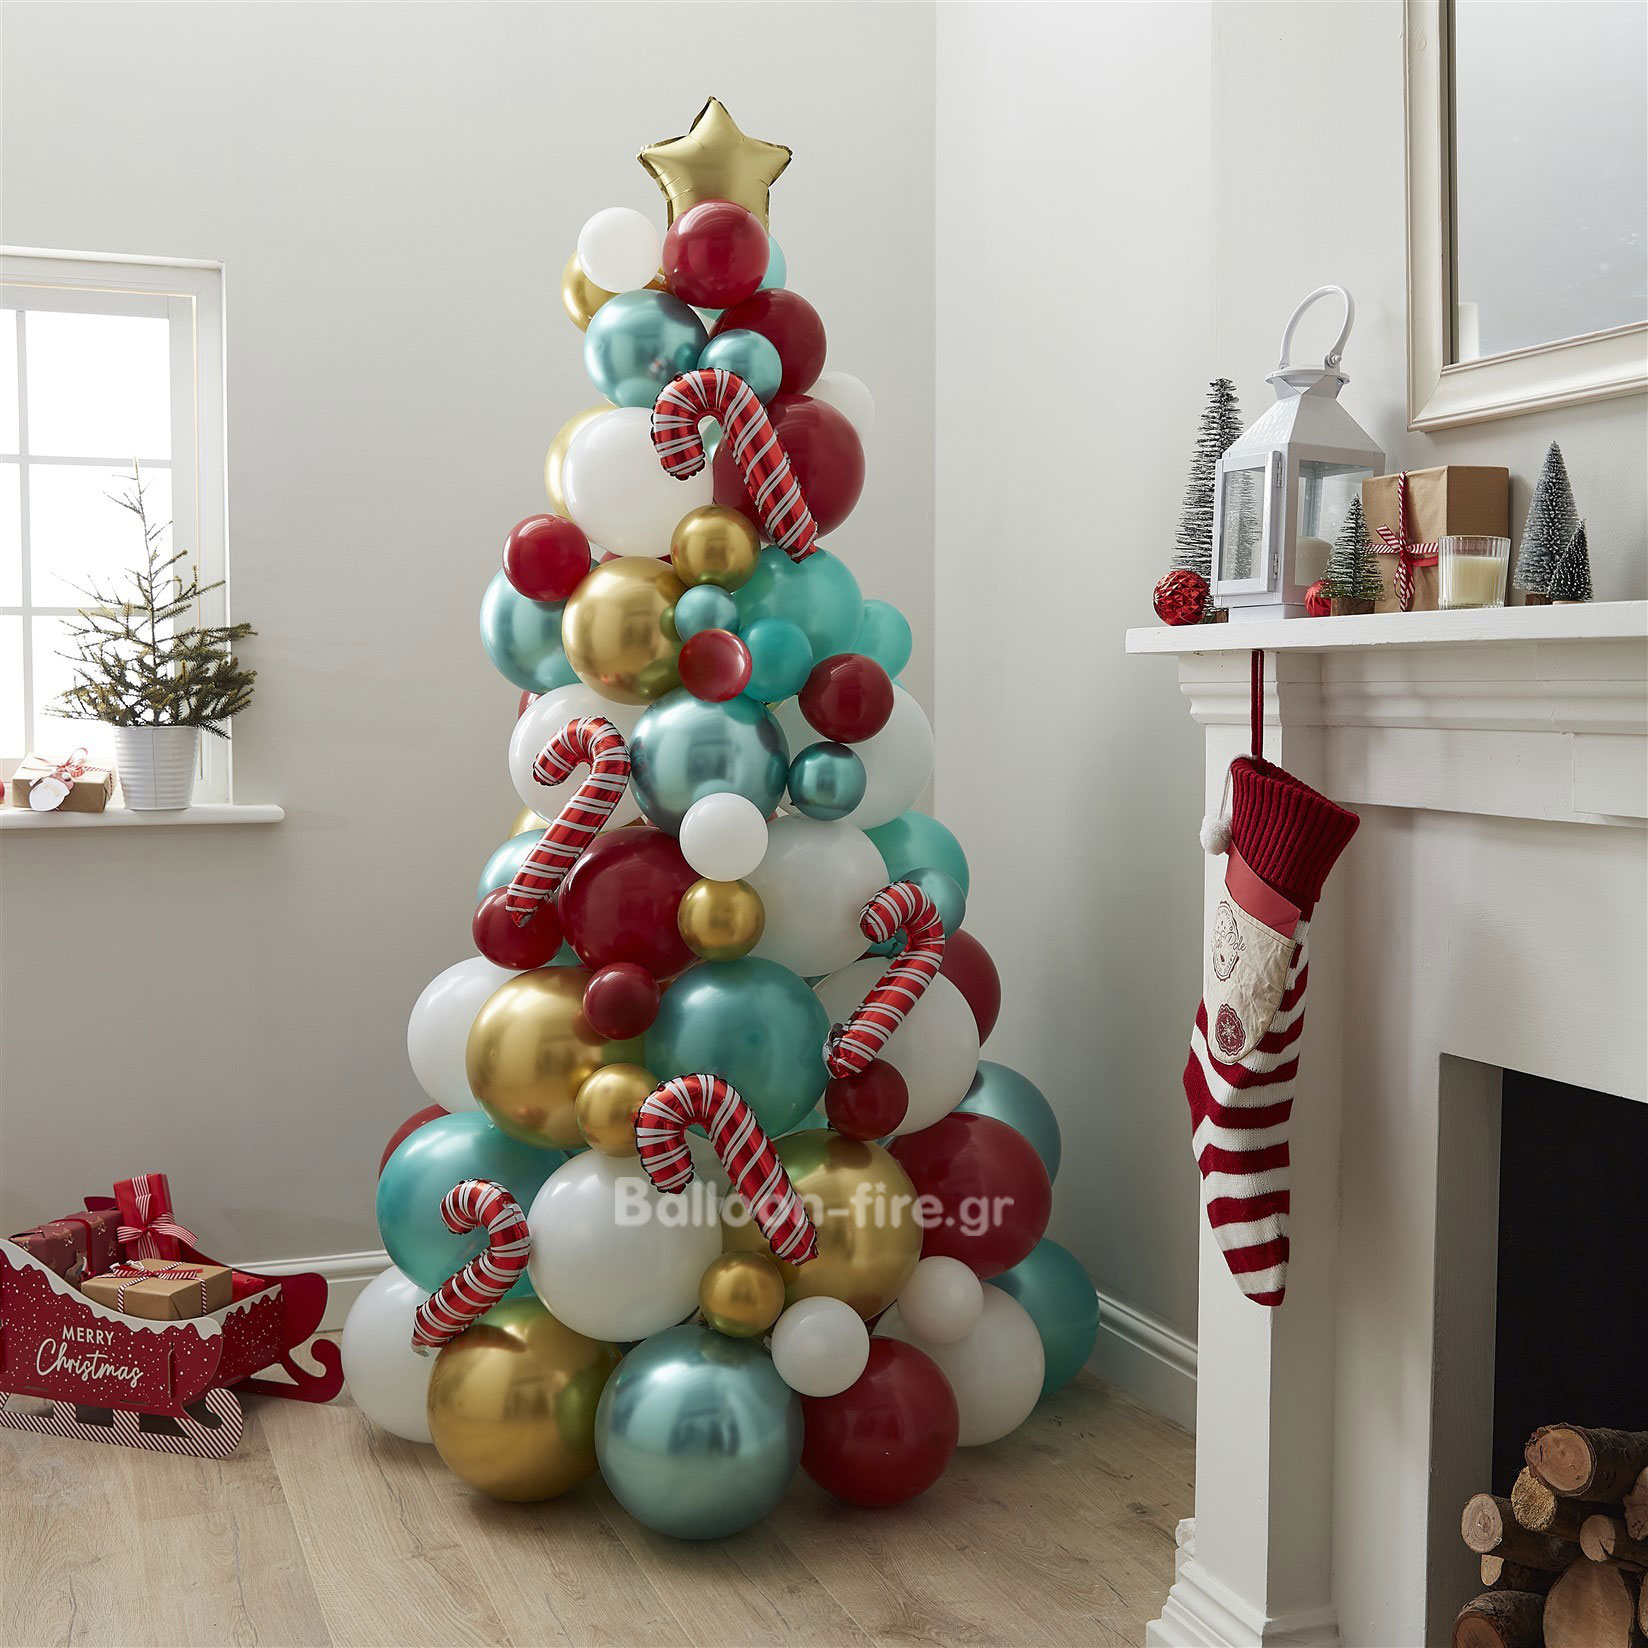 Μπαλόνια χριστουγεννιάτικο δέντρο